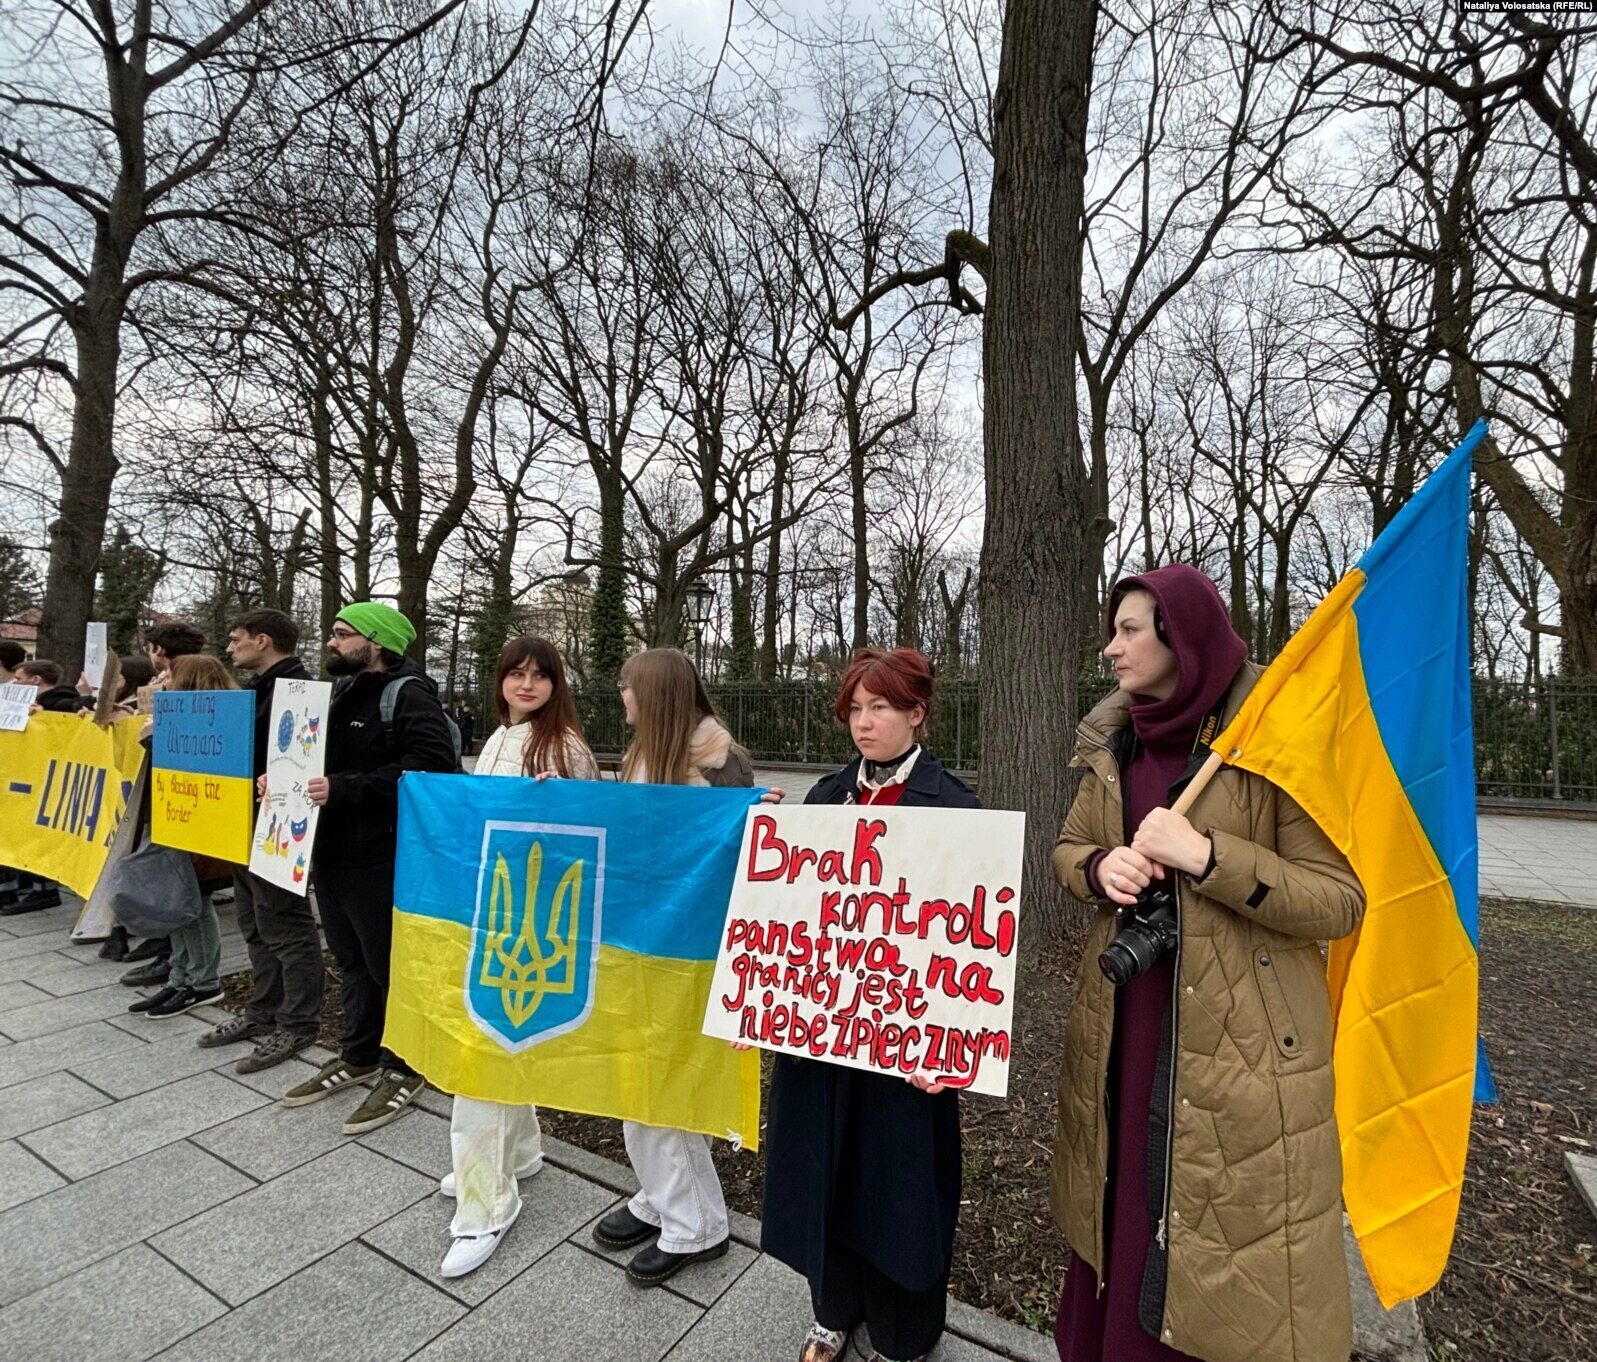 "Граница – линия жизни": в Варшаве протестовали против блокады границы с Украиной. Фото